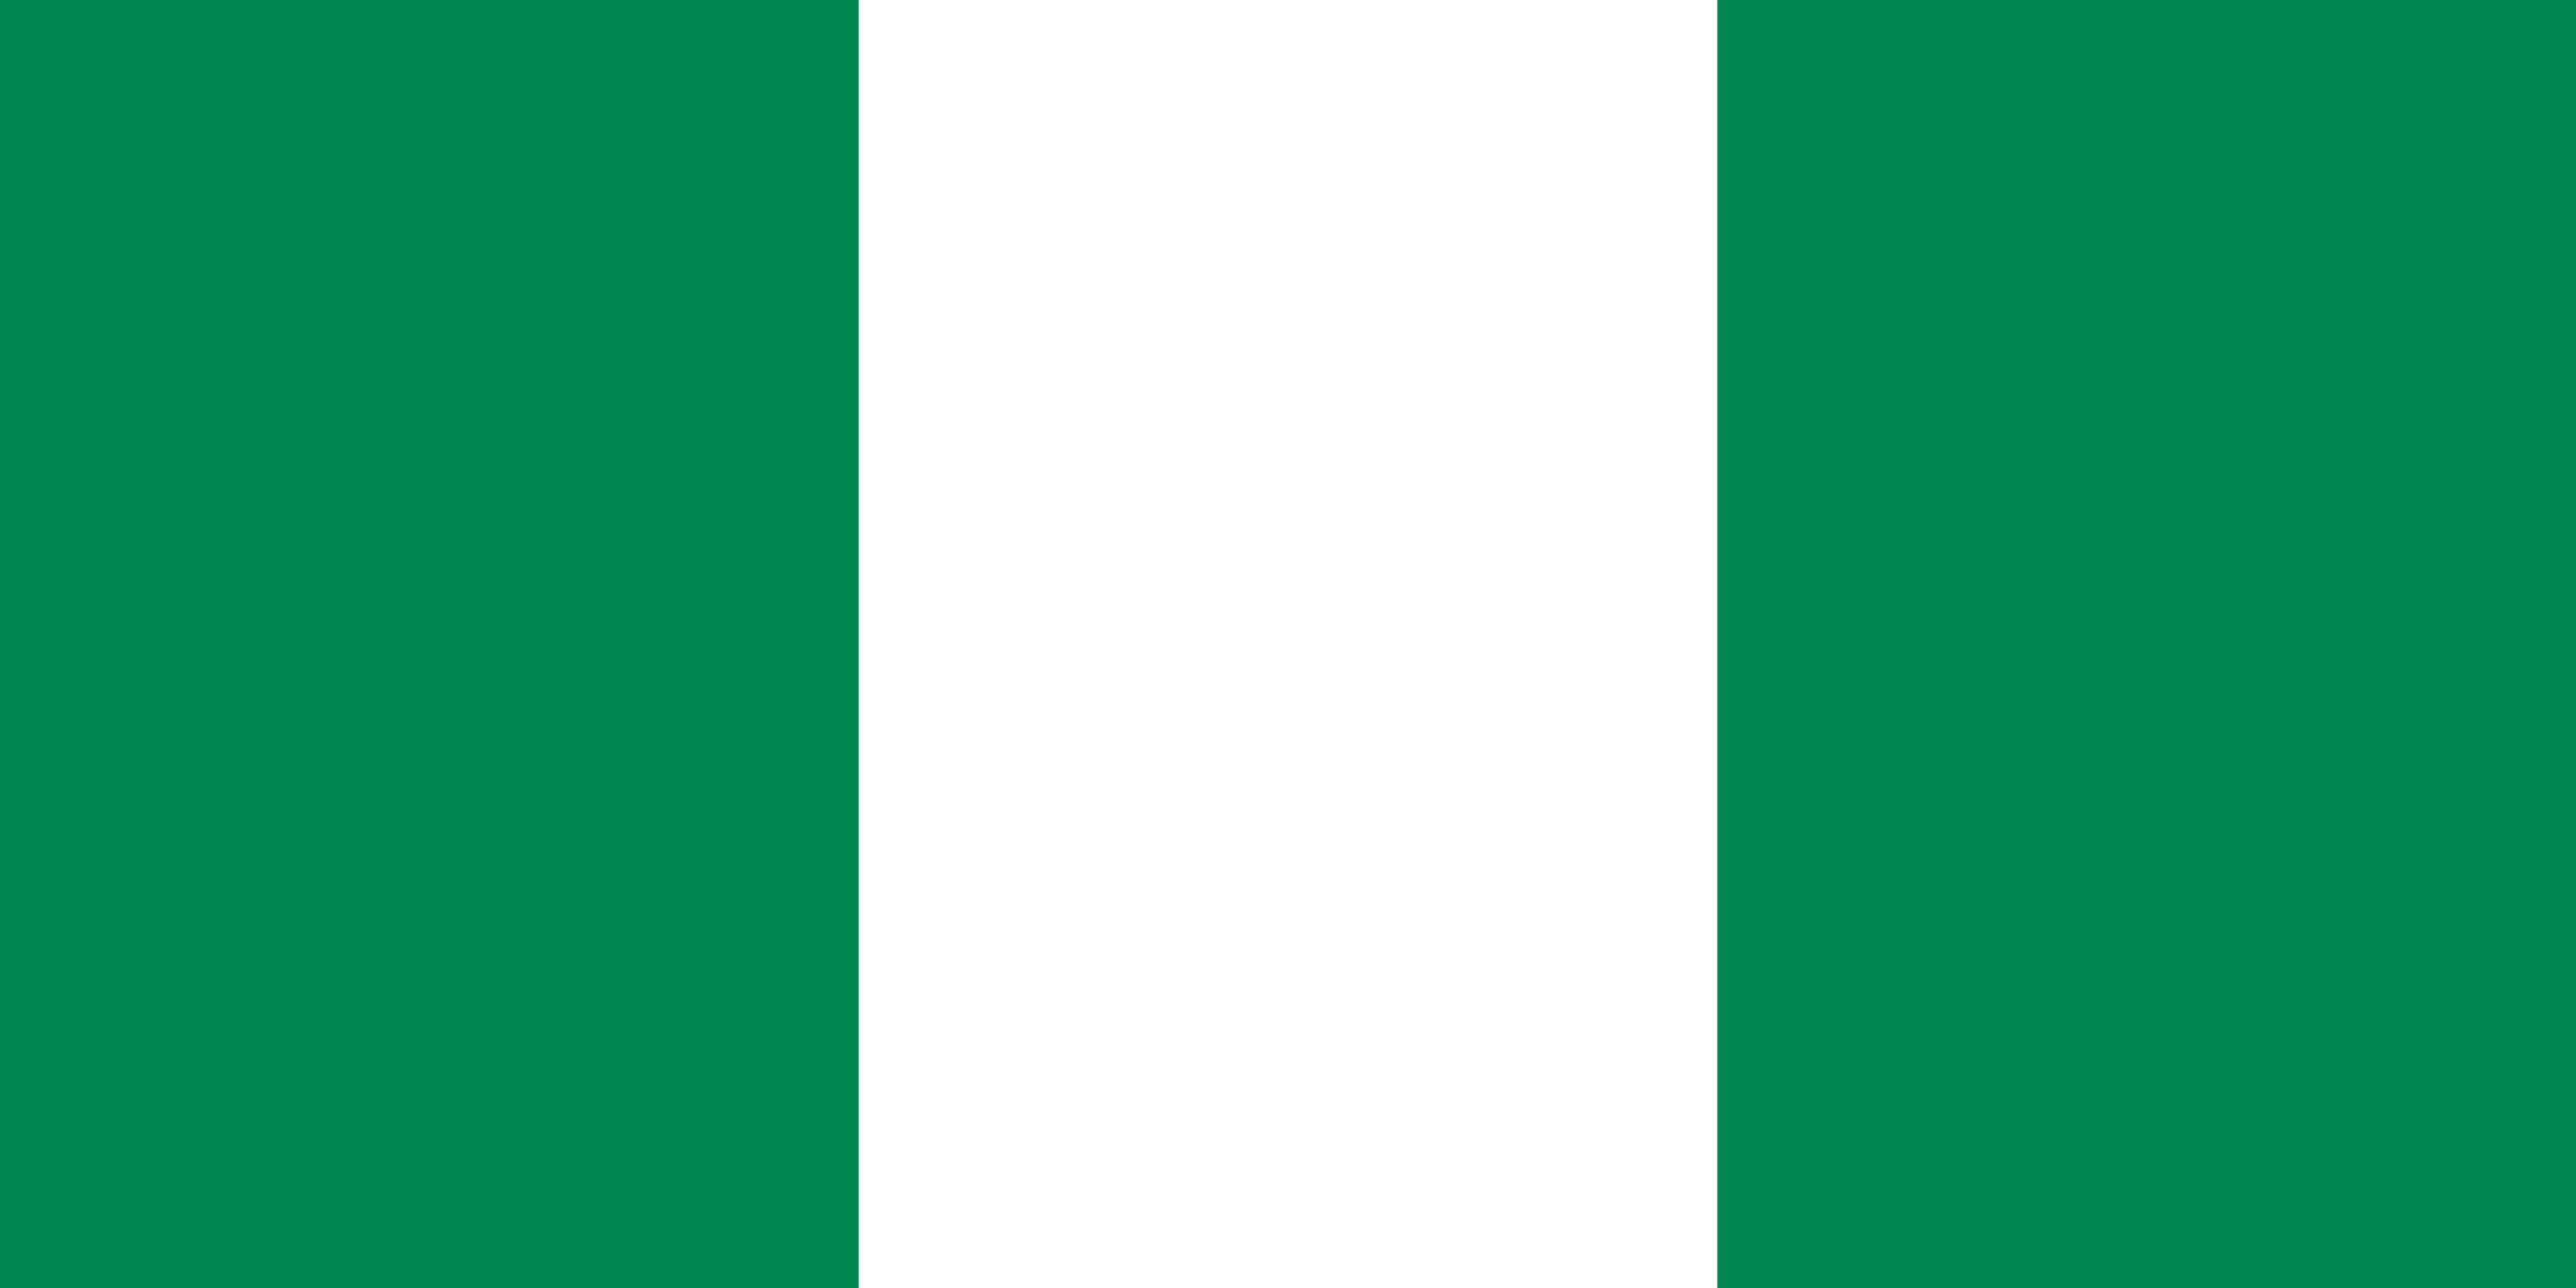 El cambio de himno nacional genera controversia en Nigeria